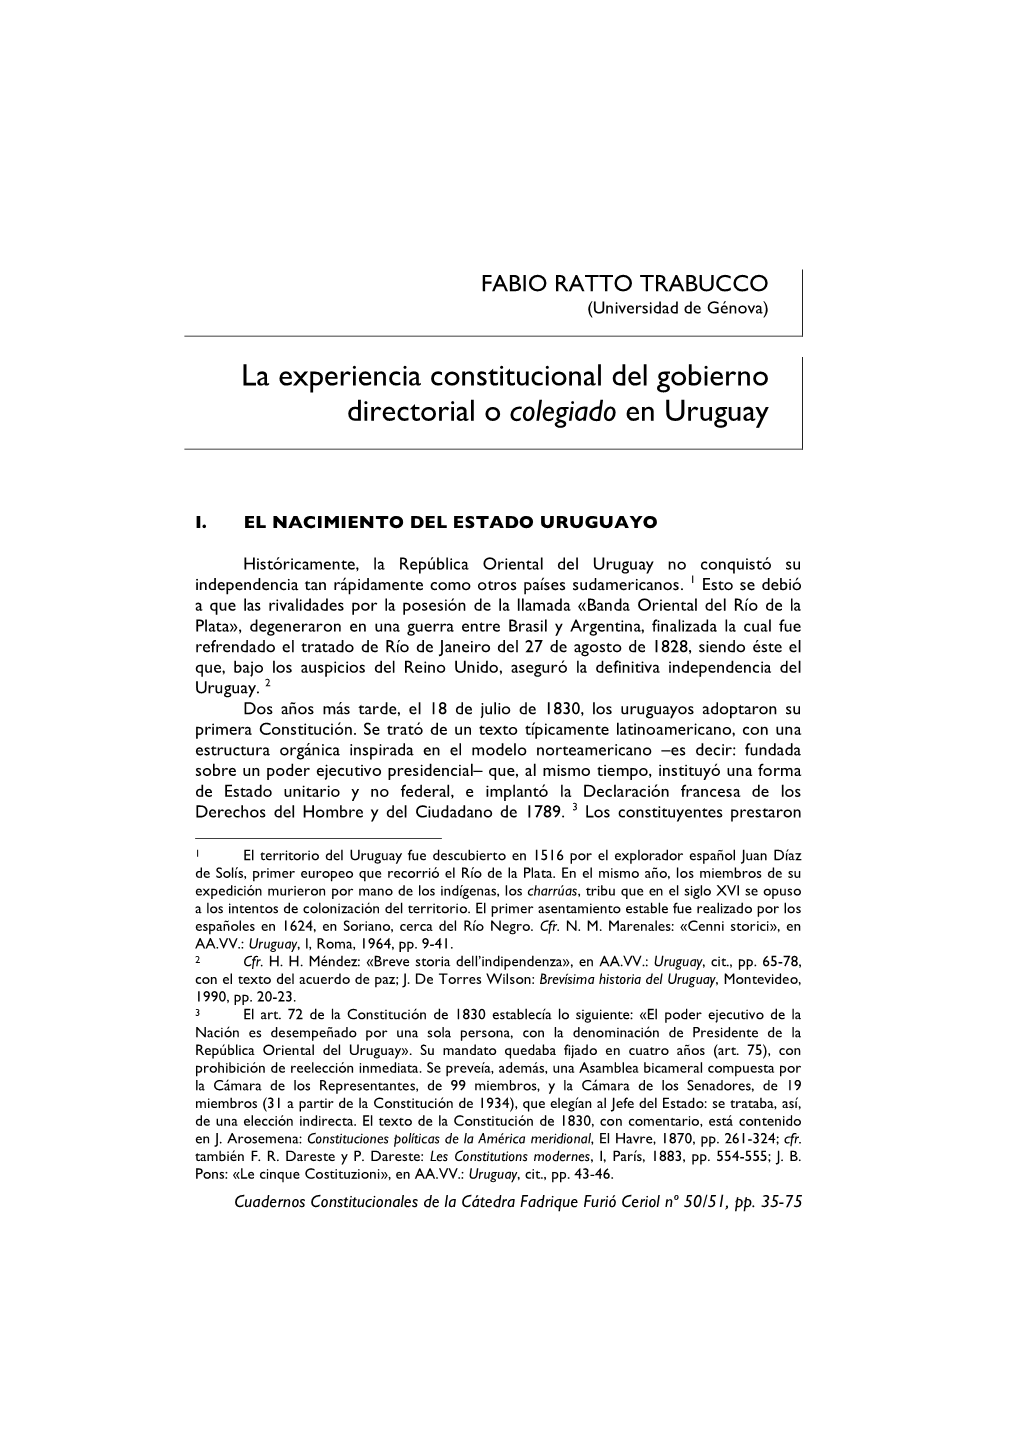 La Experiencia Constitucional Del Gobierno Directorial O Colegiado En Uruguay